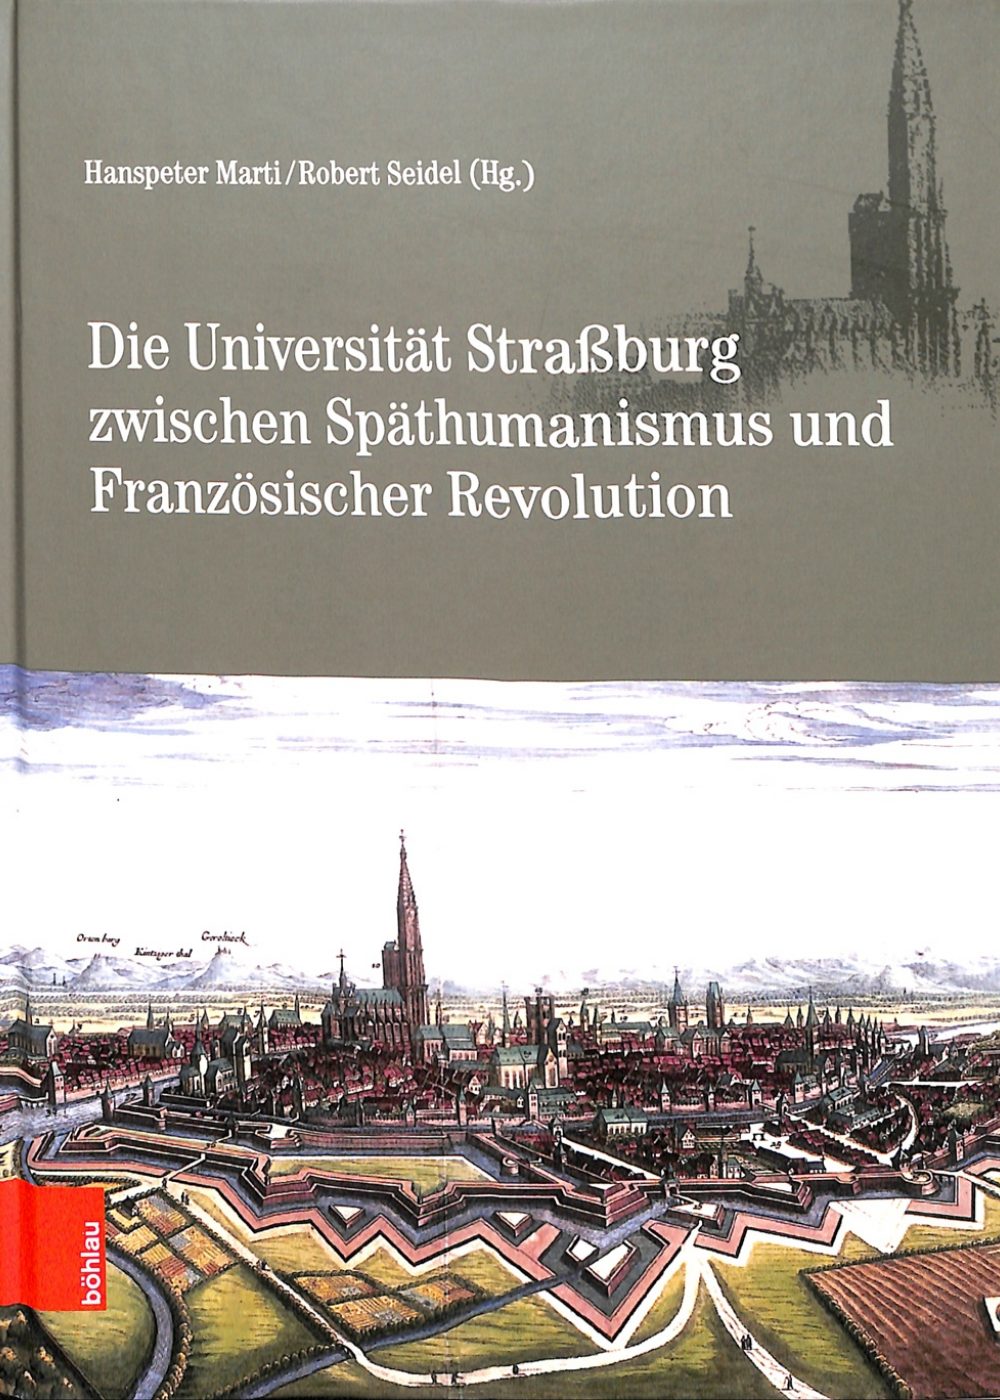 Die Universität Strassburg zwischen Späthumanismus und Französischer Revolution.